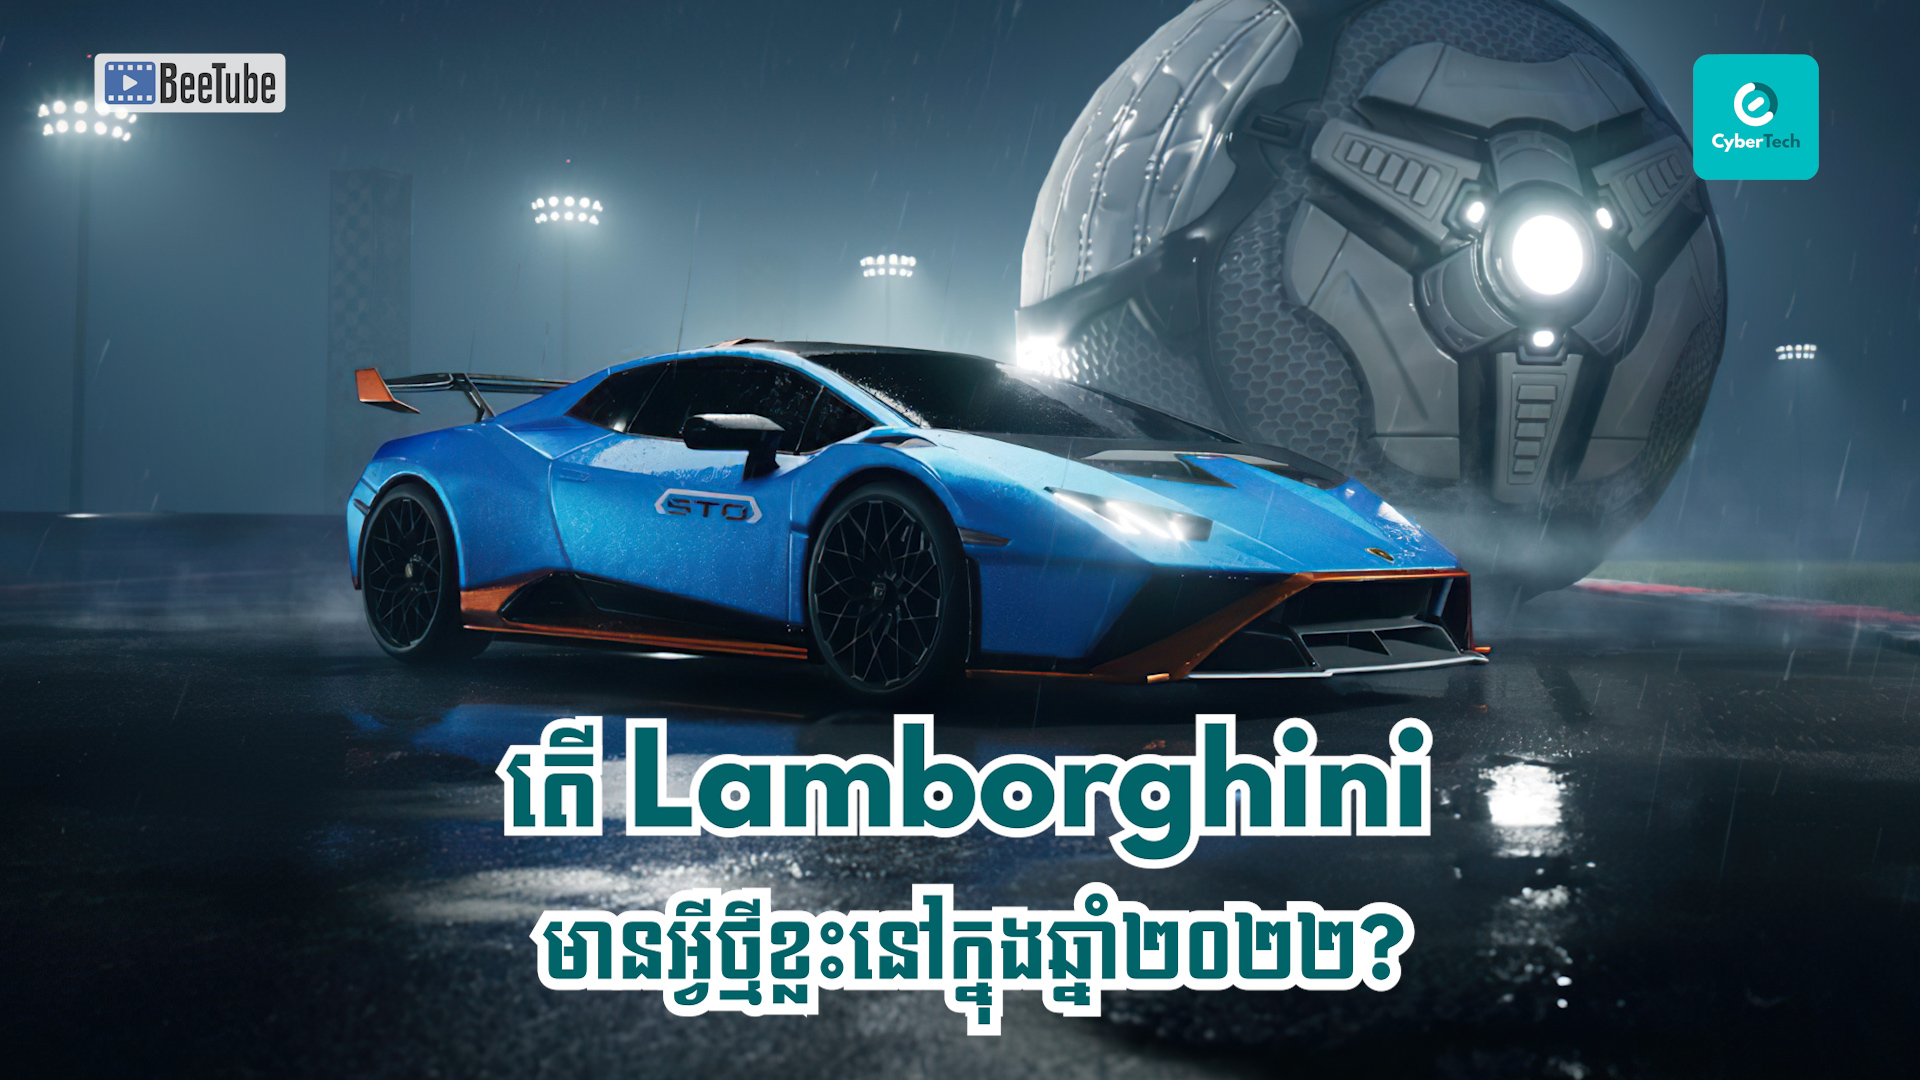 តើ Lamborghini មានអ្វីថ្មីខ្លះនៅក្នុងឆ្នាំ២០២២?